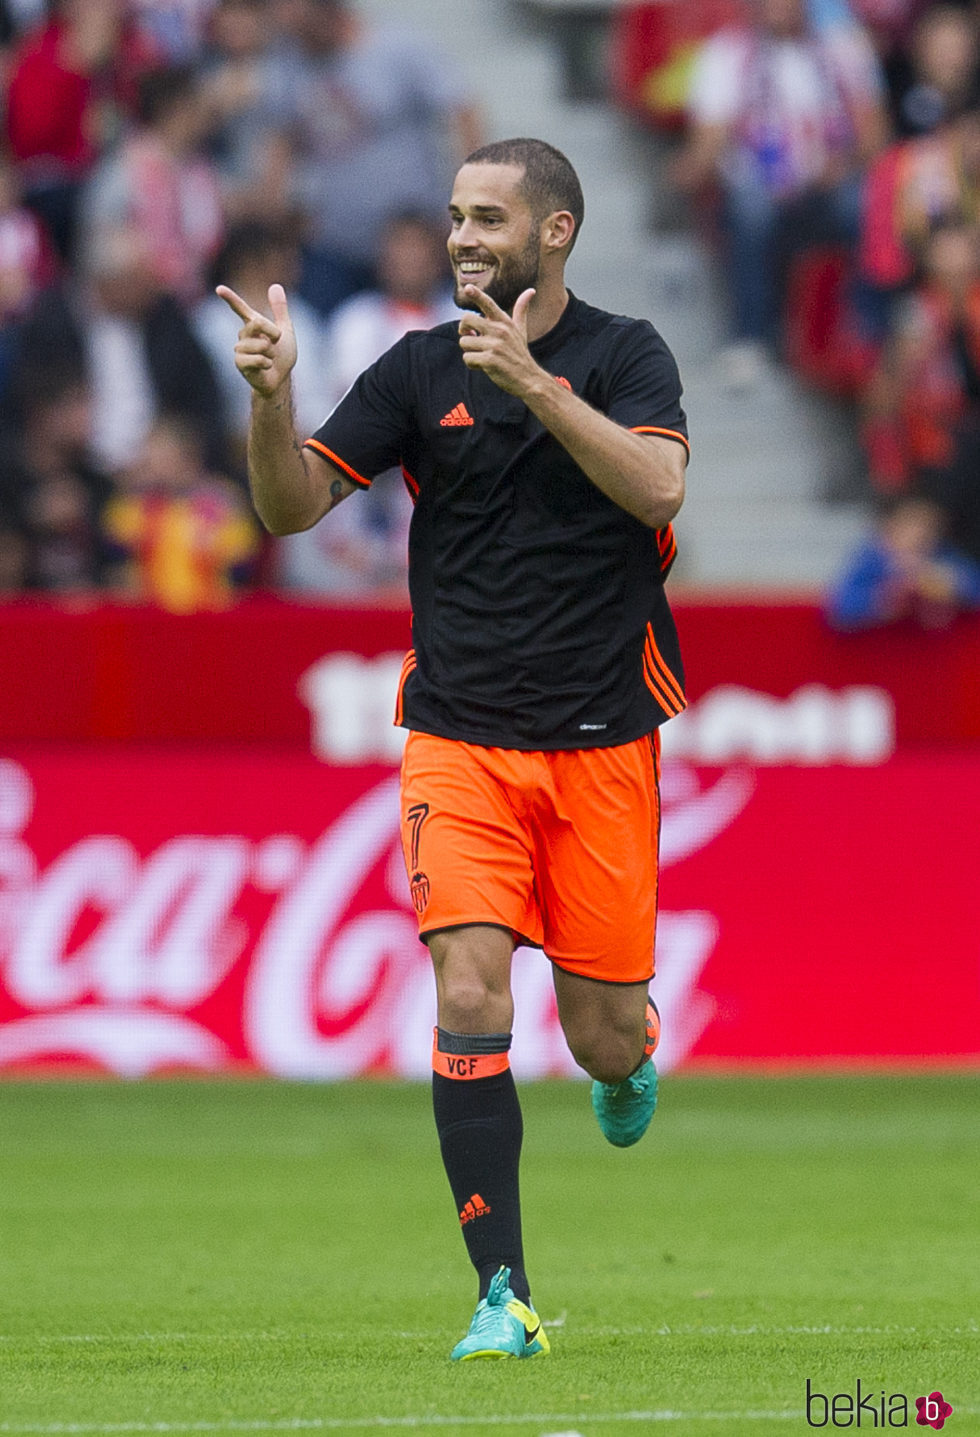 Mario Suárez durante un partido de fútbol del Valencia